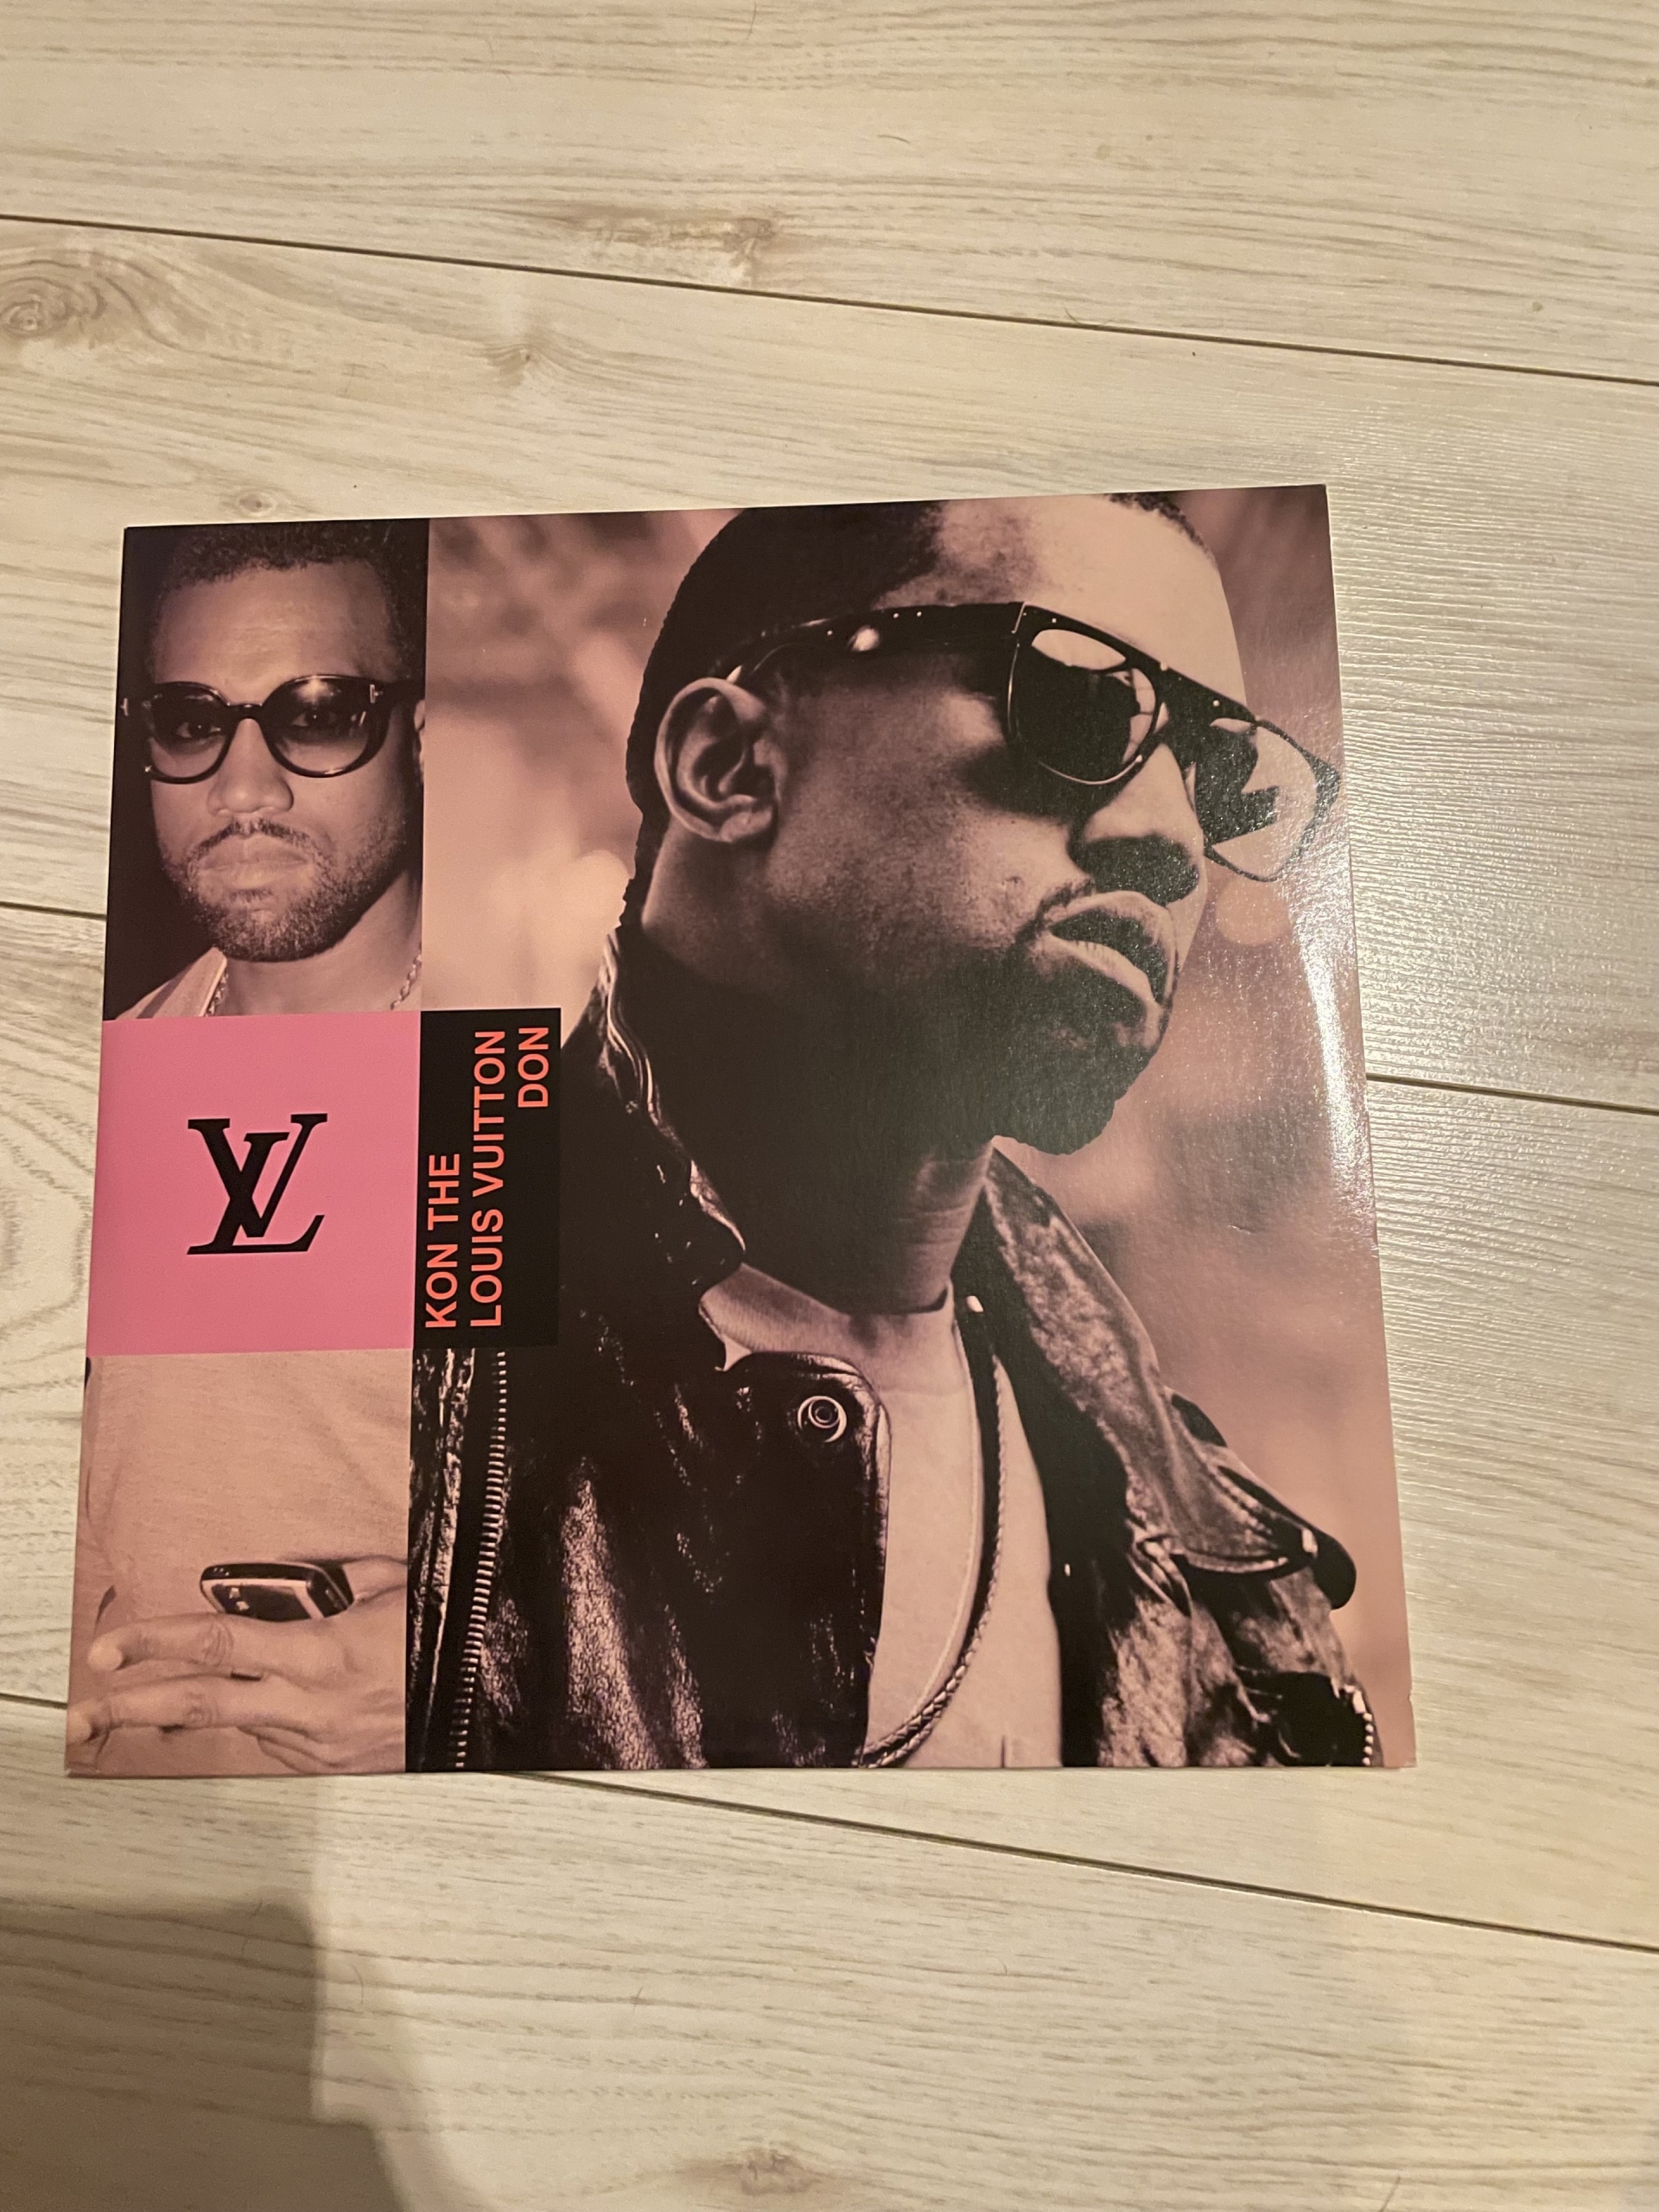 Kanye West Kon The Louis Vuitton Don, Racibórz